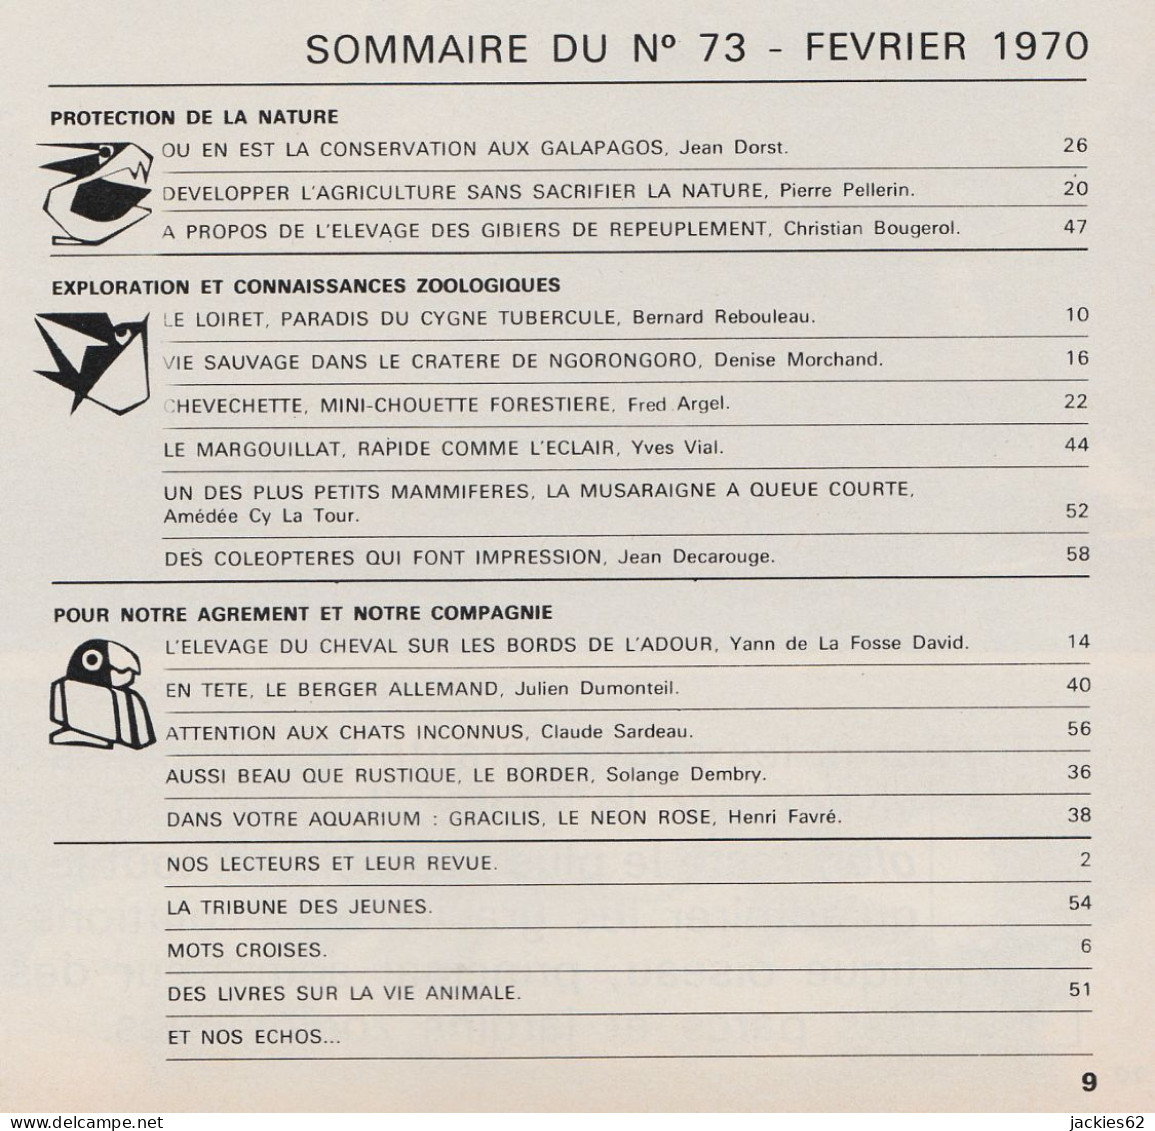 073/ LA VIE DES BETES / BETES ET NATURE N° 73 Du 2/1970, Voir Sommaire - Animals